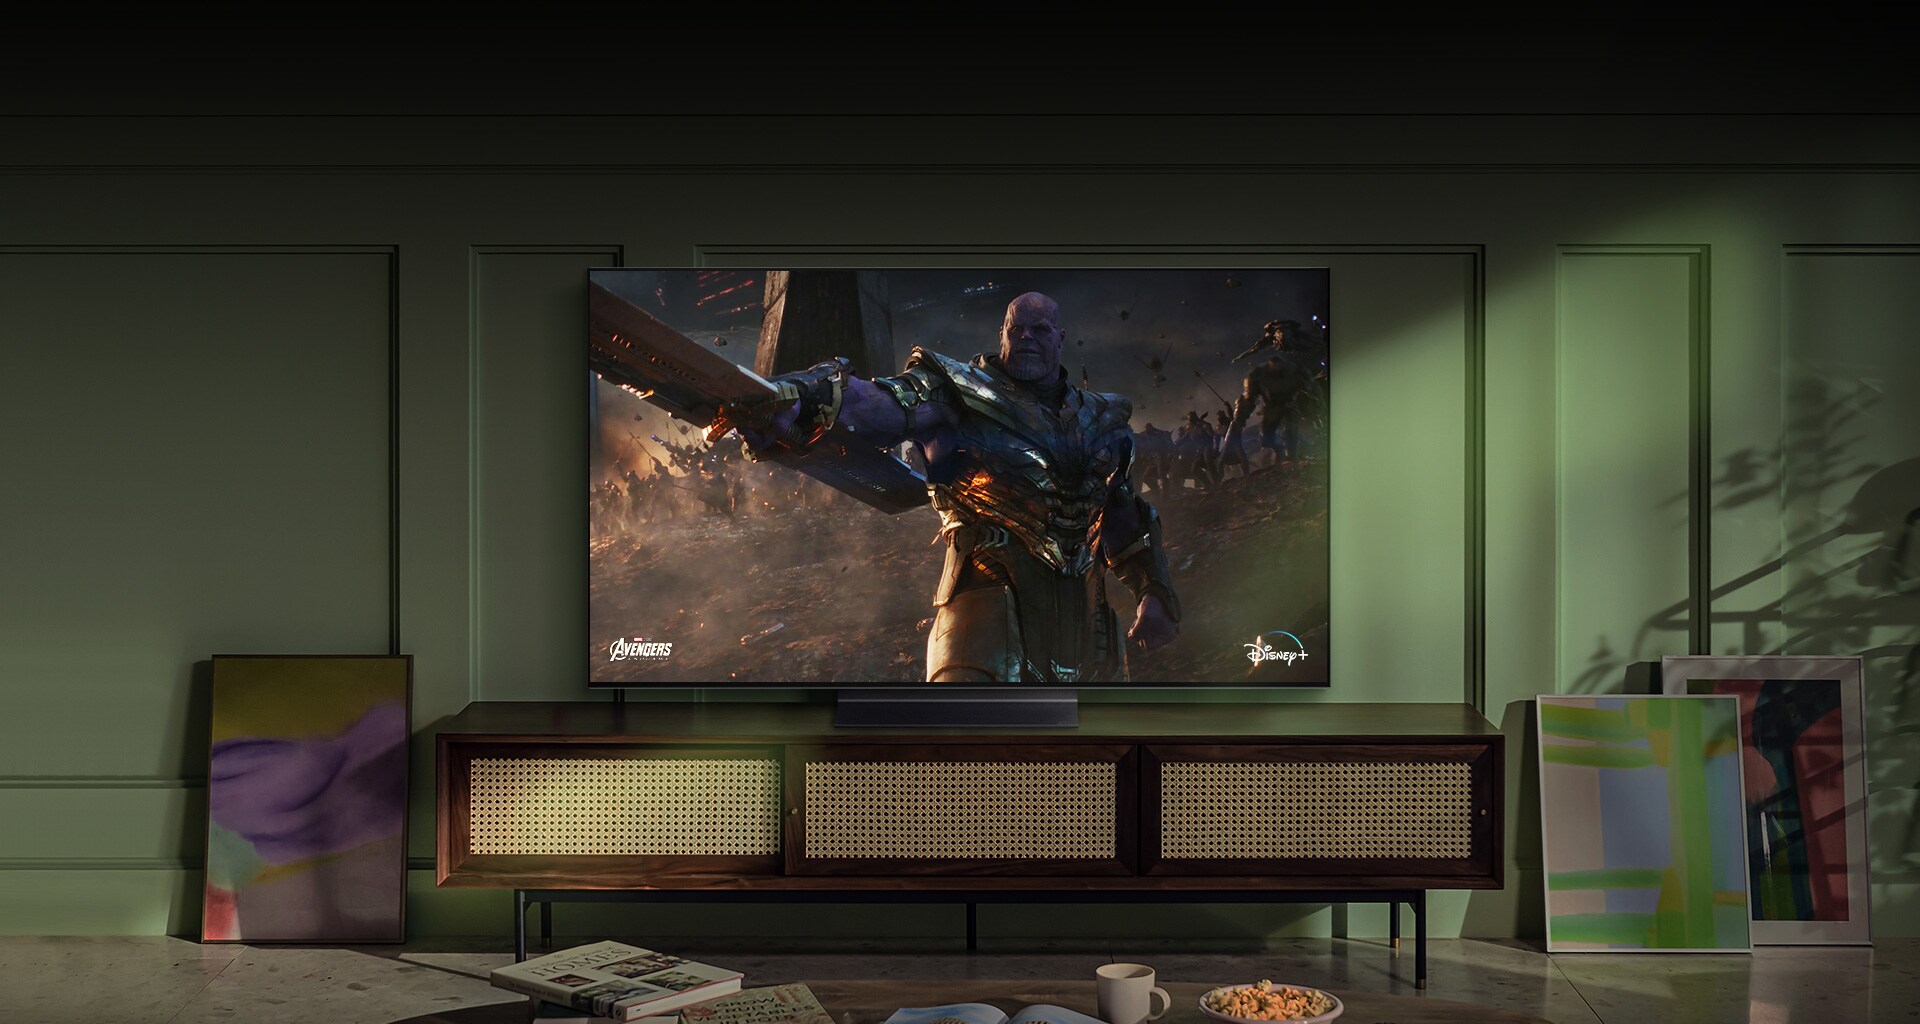 Veliki LG OLED televizor montiran na zid prikazuje akcionu filmsku scenu